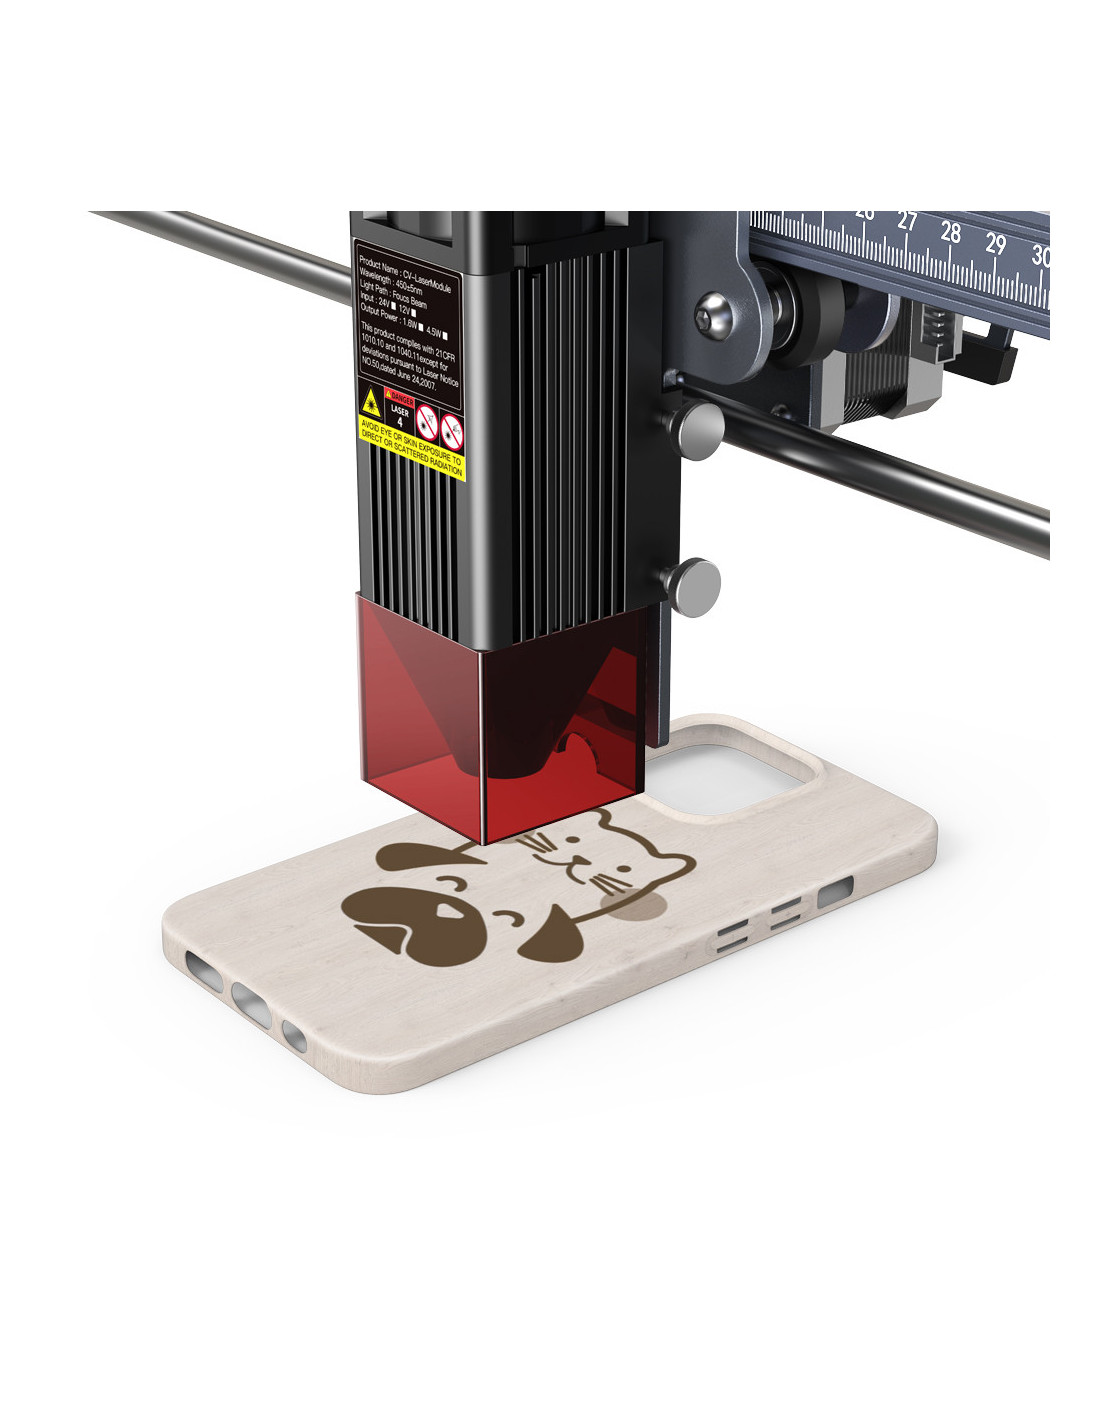 Creality Laser Falcon Engraver 10W - laser cutter engraver